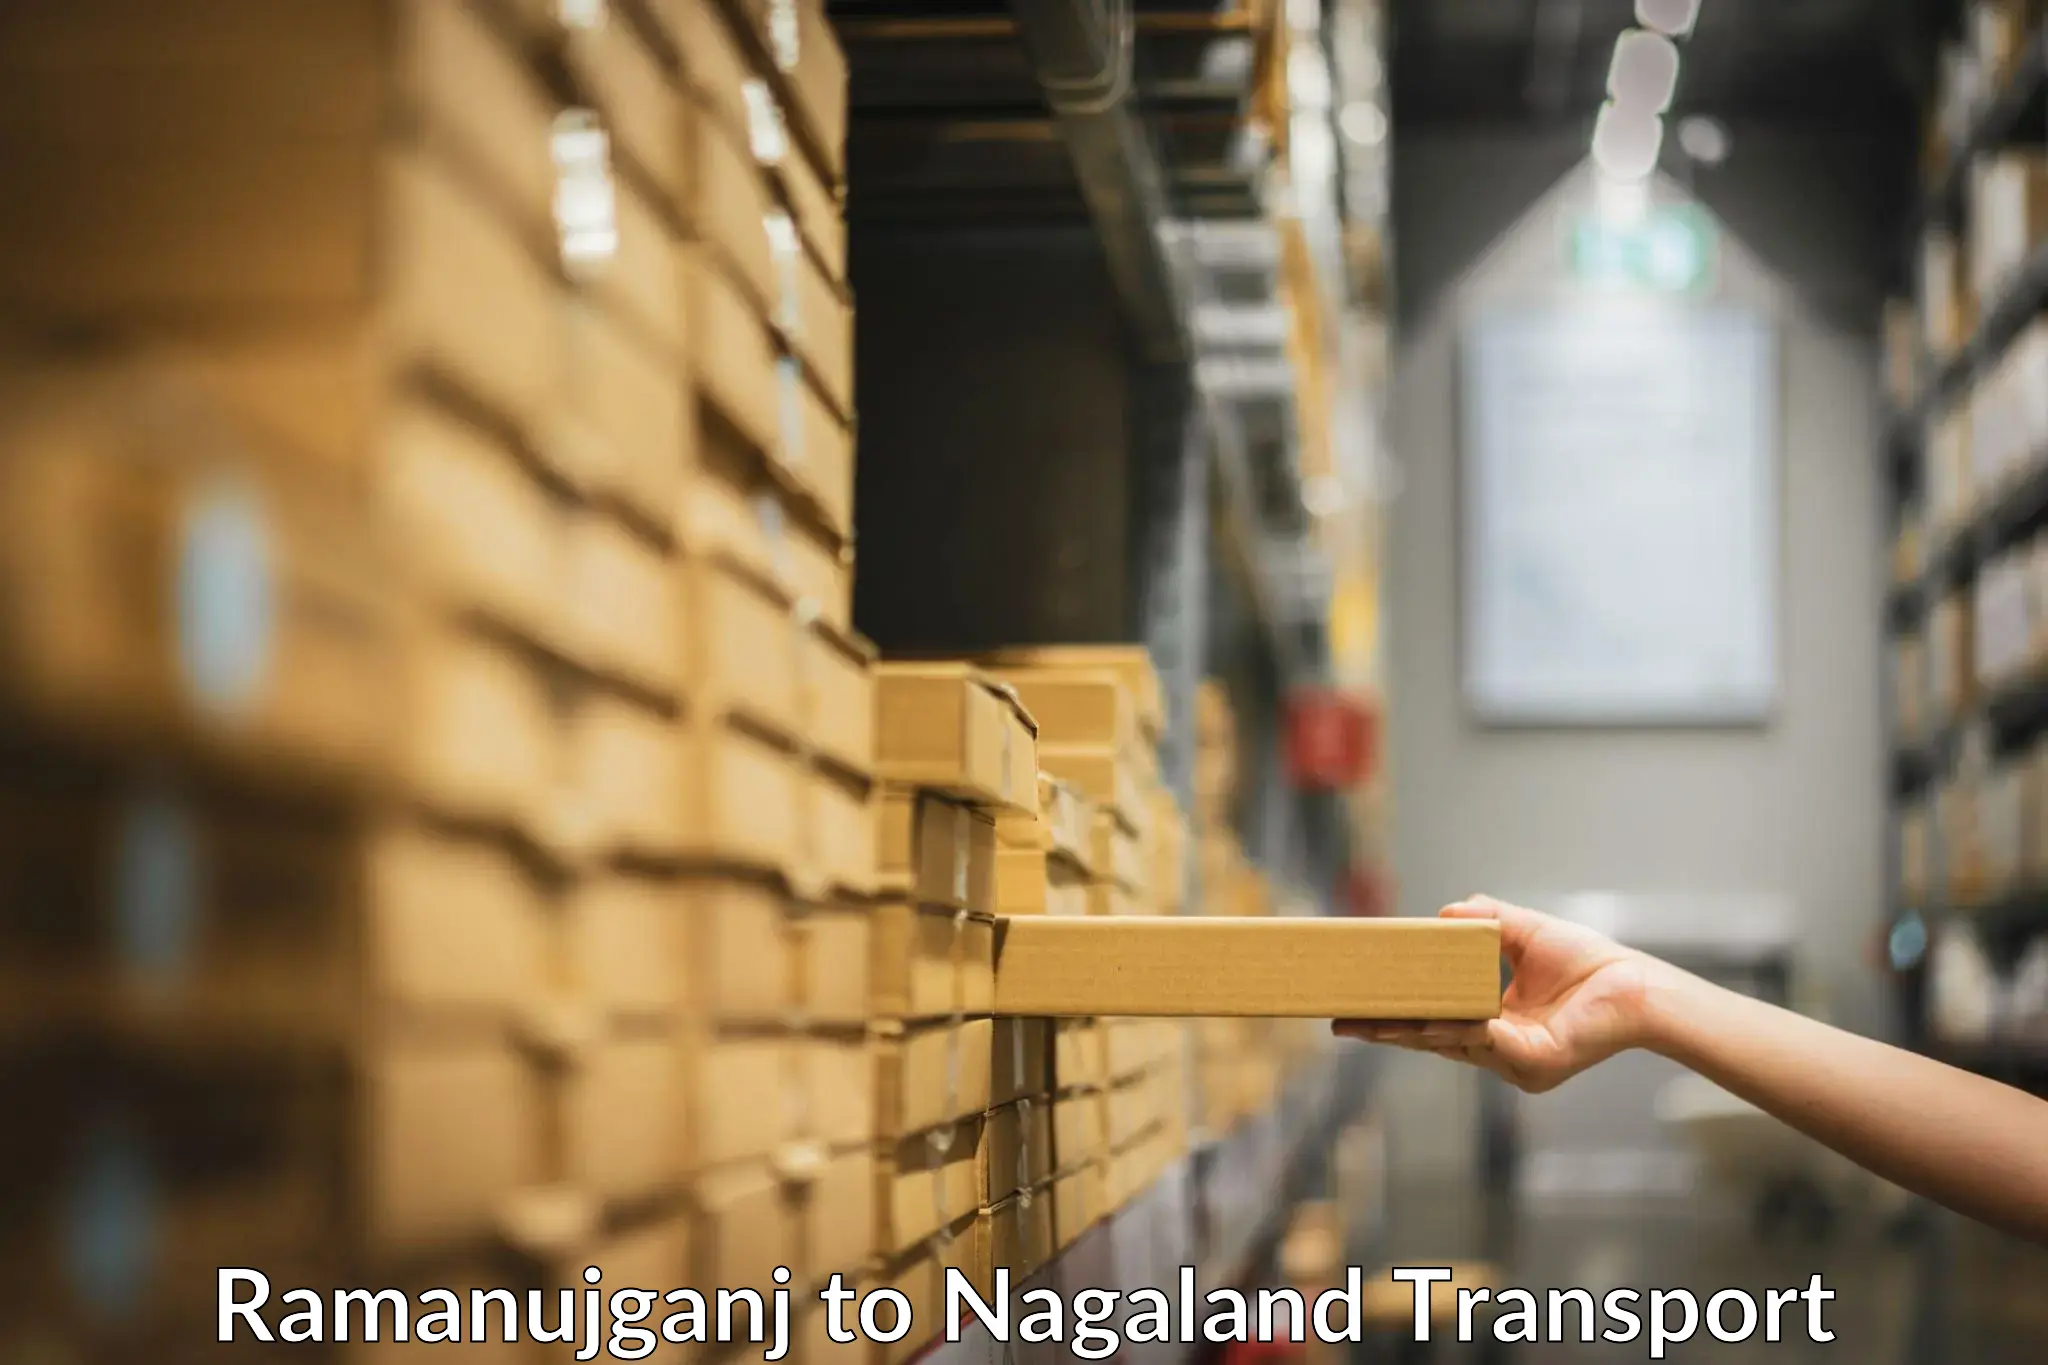 Air freight transport services Ramanujganj to Nagaland